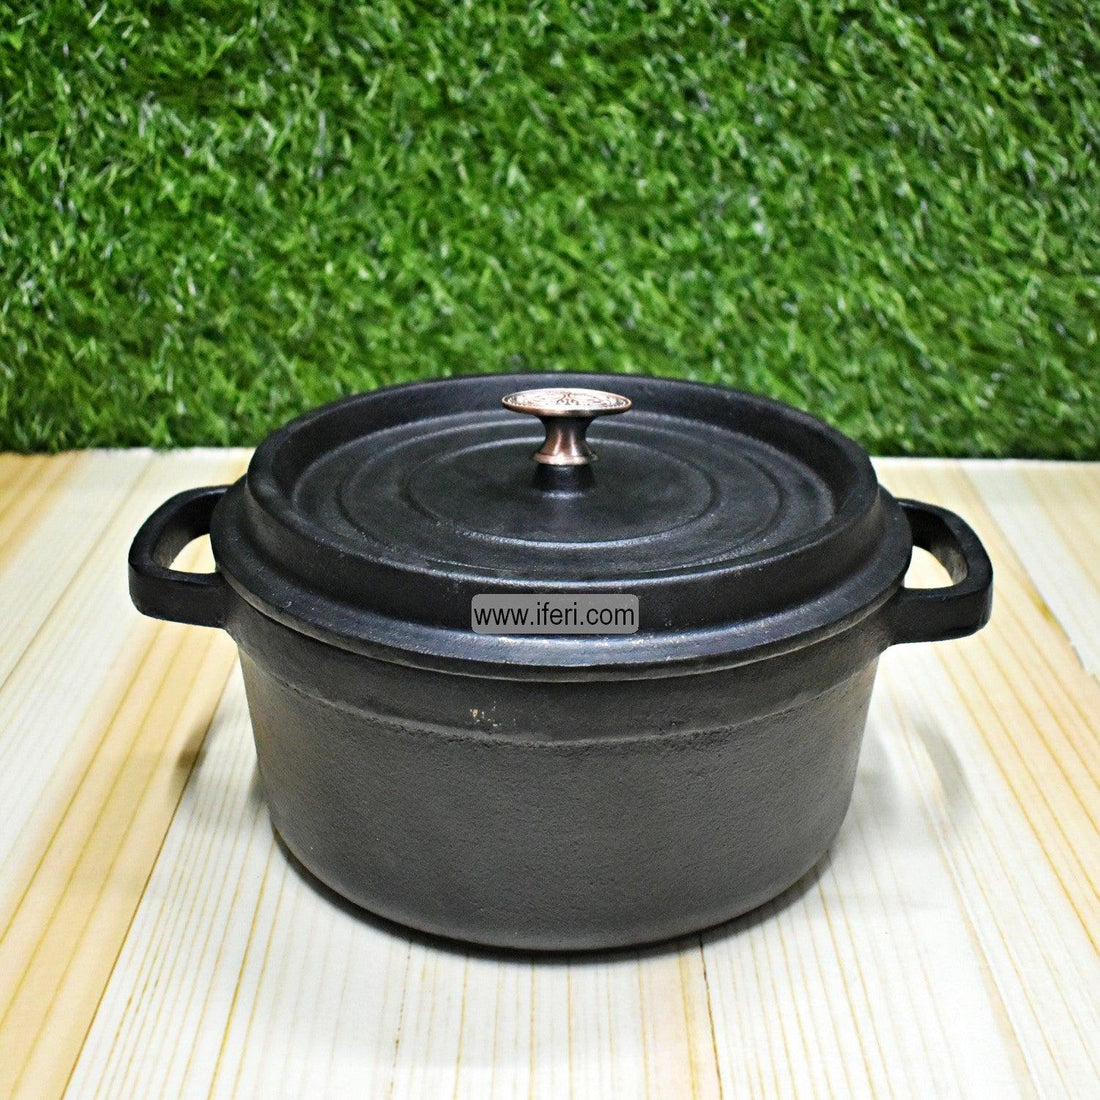 23cm Cast Iron Cookware UT7910 Price in Bangladesh - iferi.com